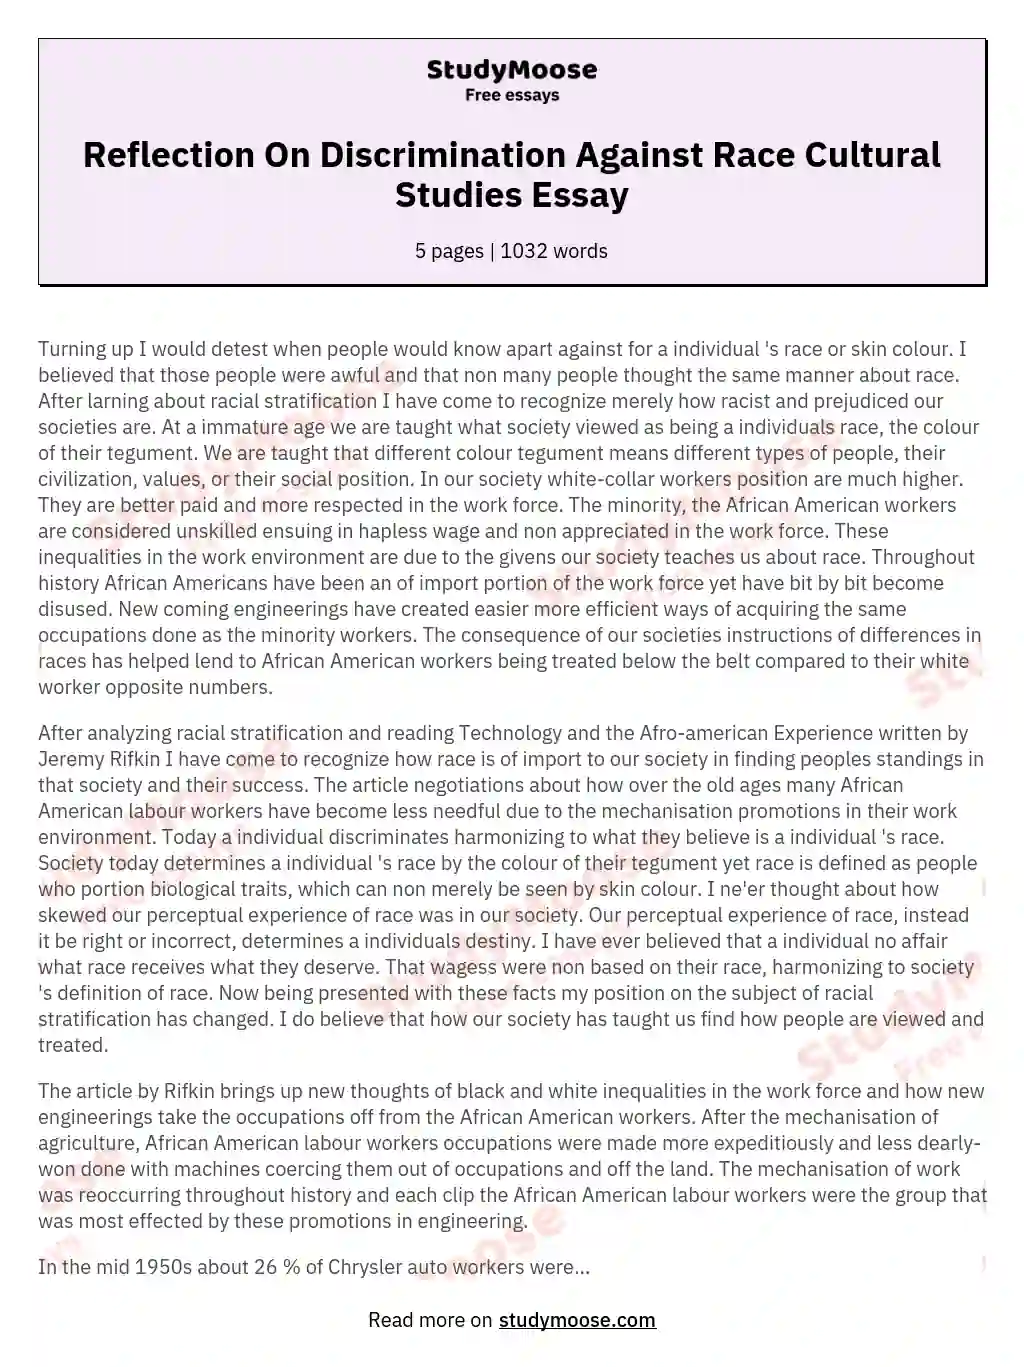 conclusion about discrimination essay